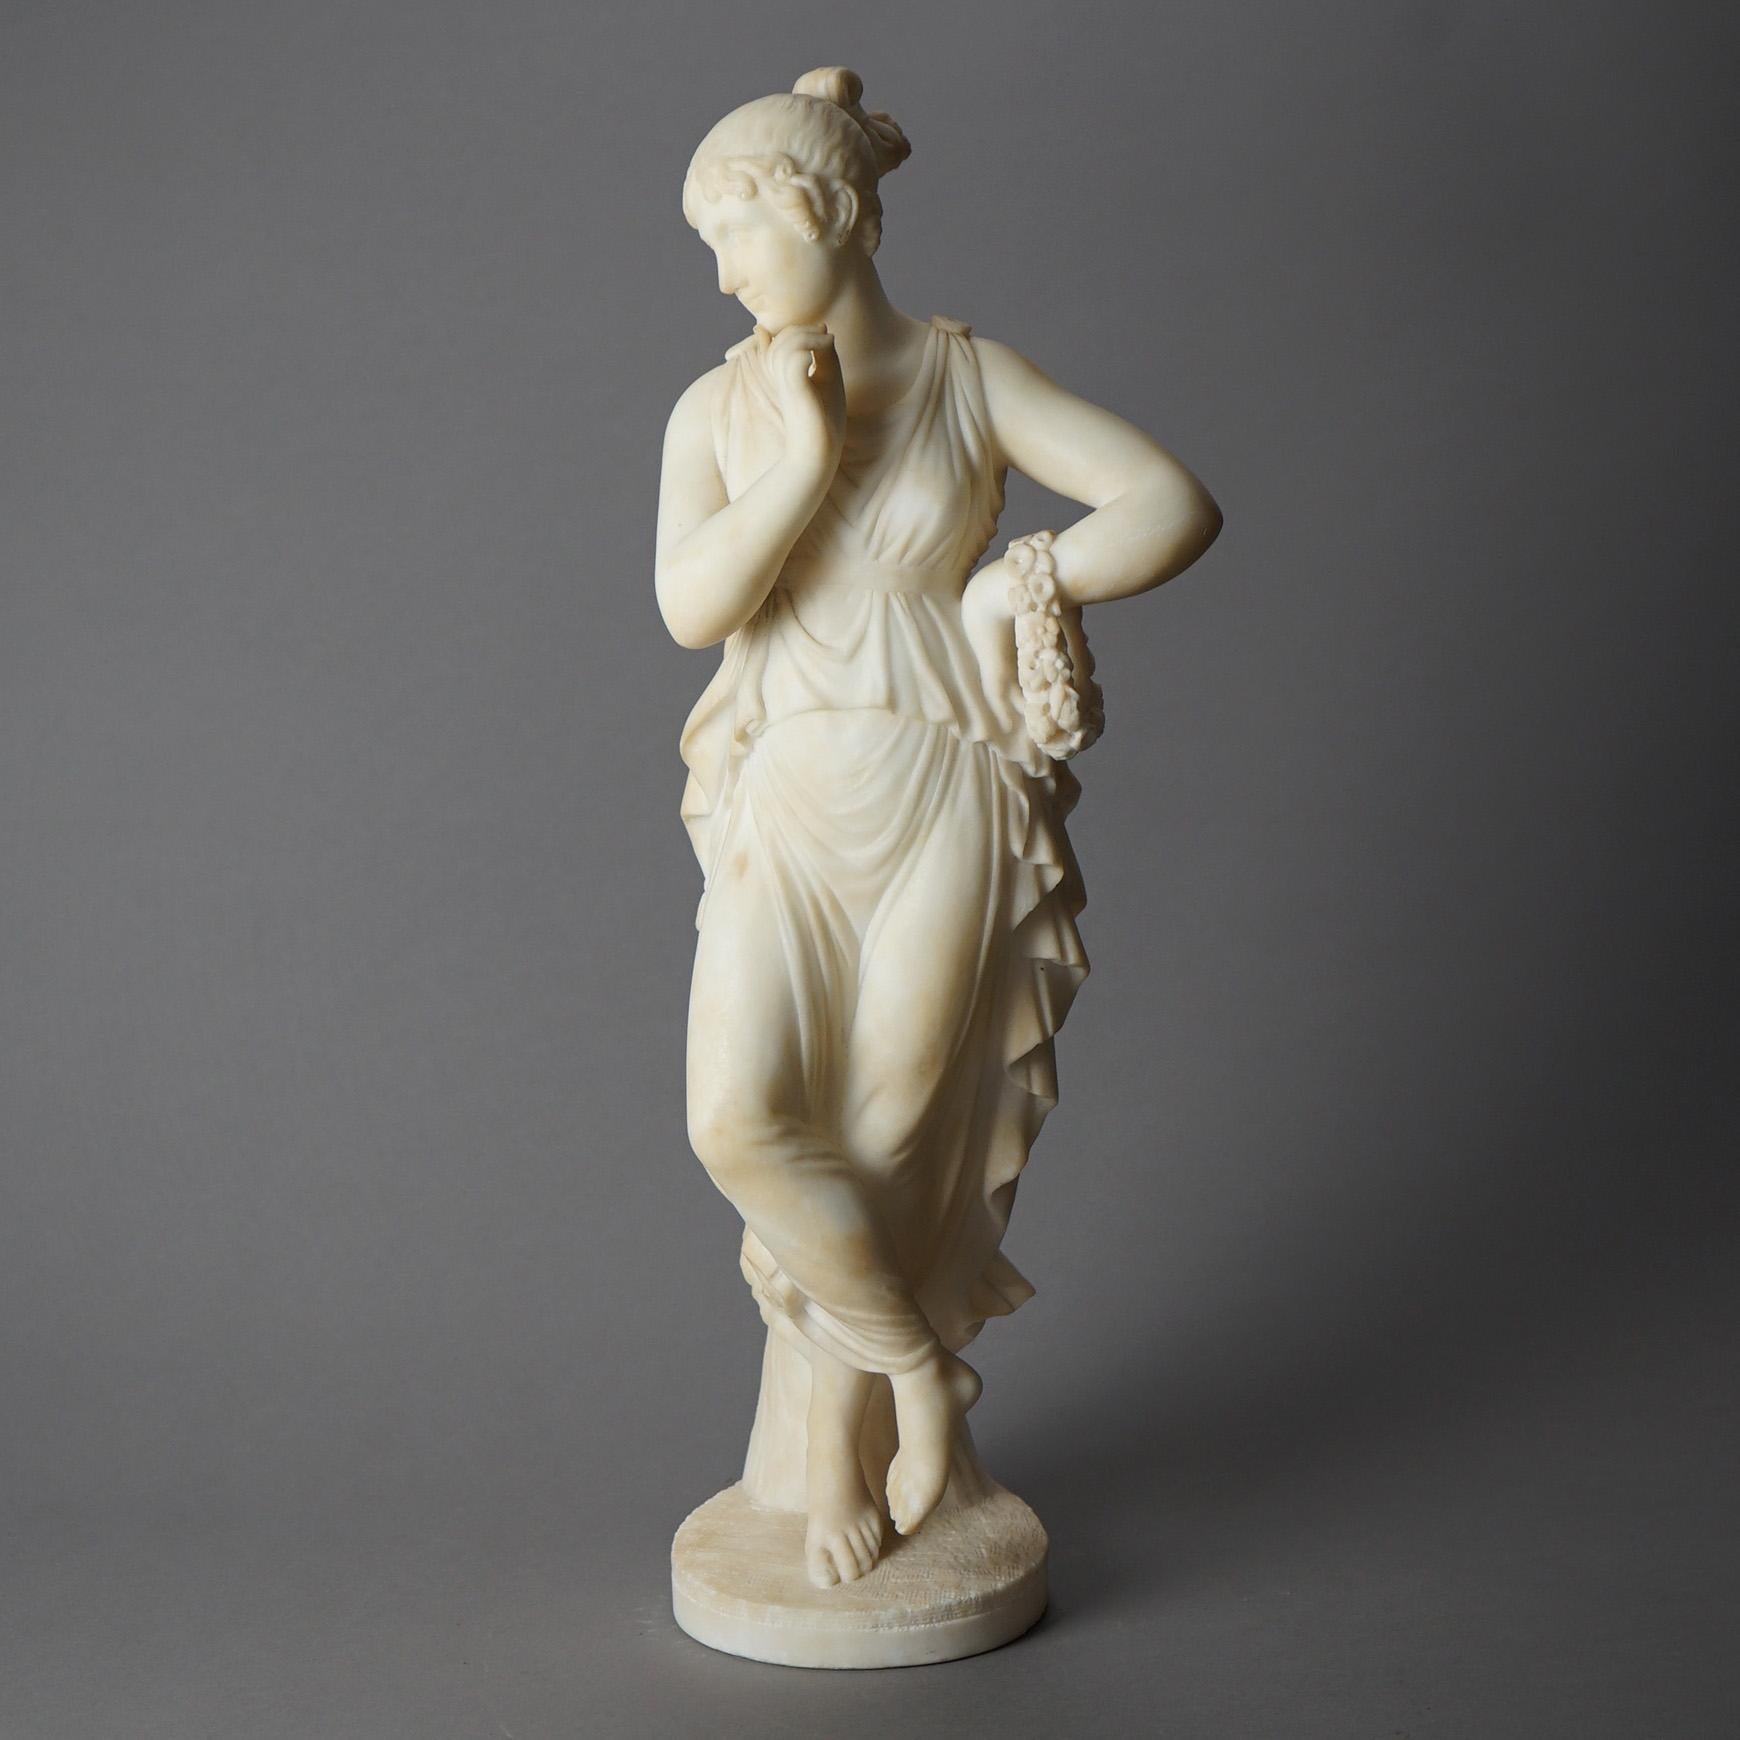 Ancienne sculpture figurative italienne signée P. Bazzanti, Florence offre une femme classique en albâtre sculpté, signature de l'artiste telle que photographiée, 19ème siècle

Mesures - 22 